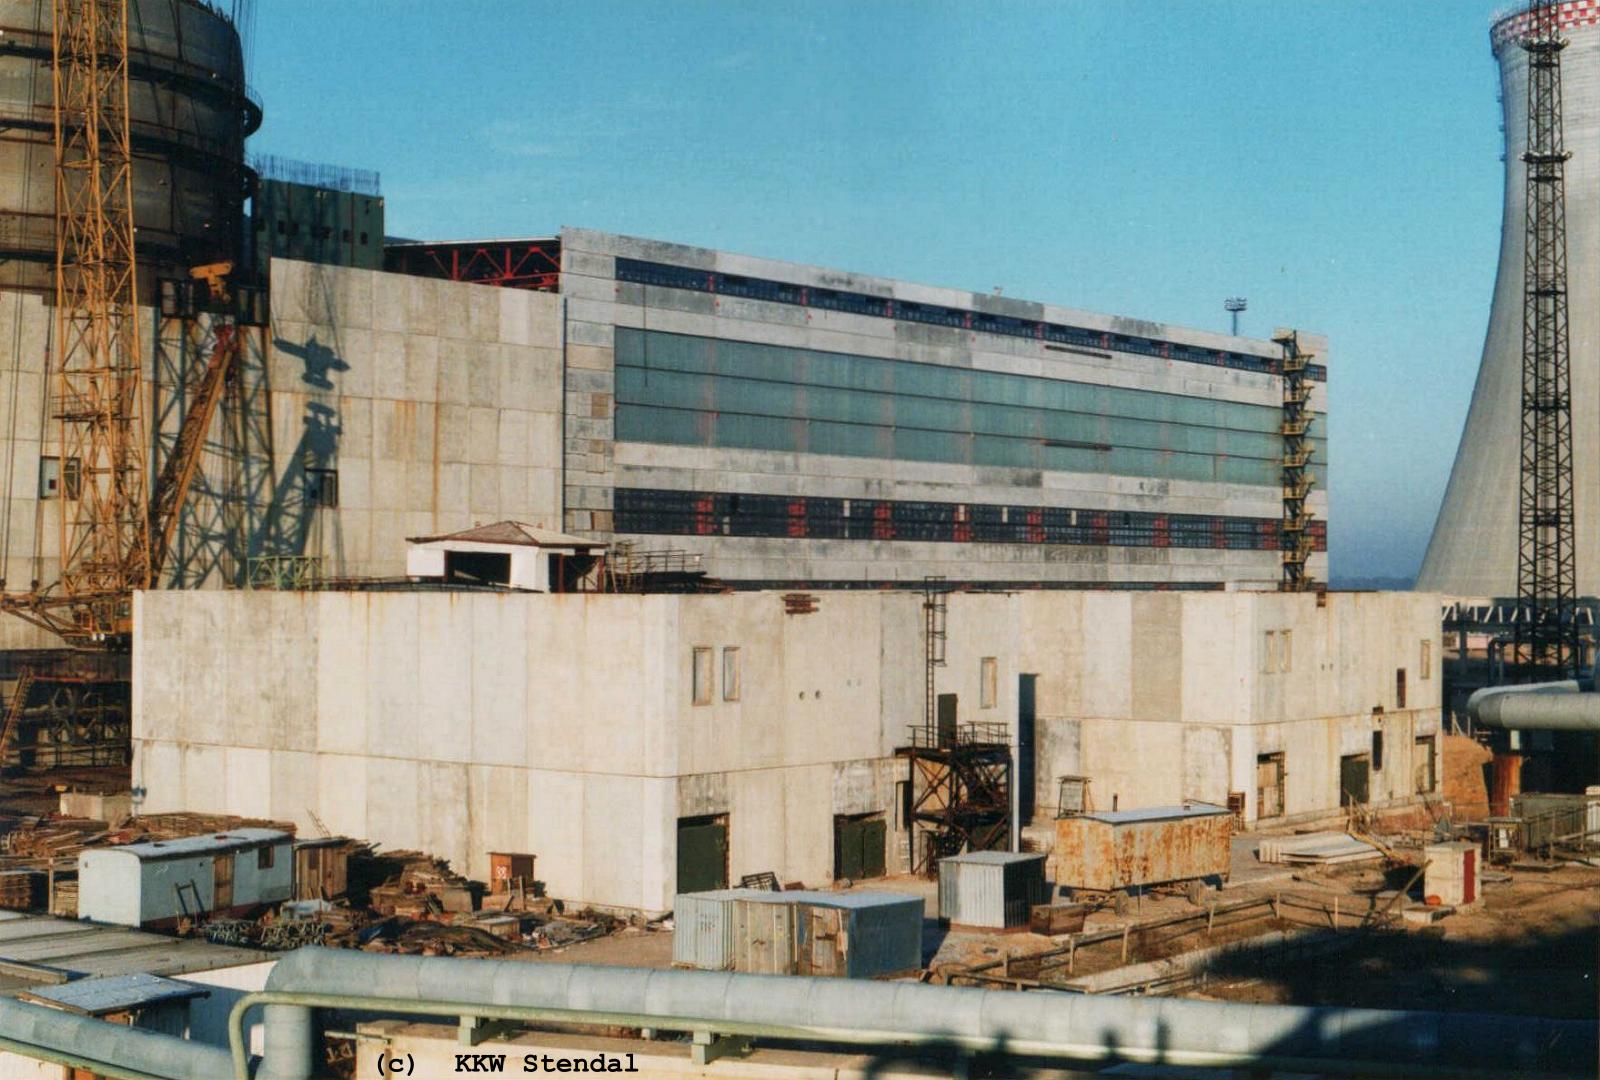  KKW Stendal, Baustelle 1990, Mitte Maschinenhaus A, davor 2 Notstromgebäude
 für Reaktor A
 